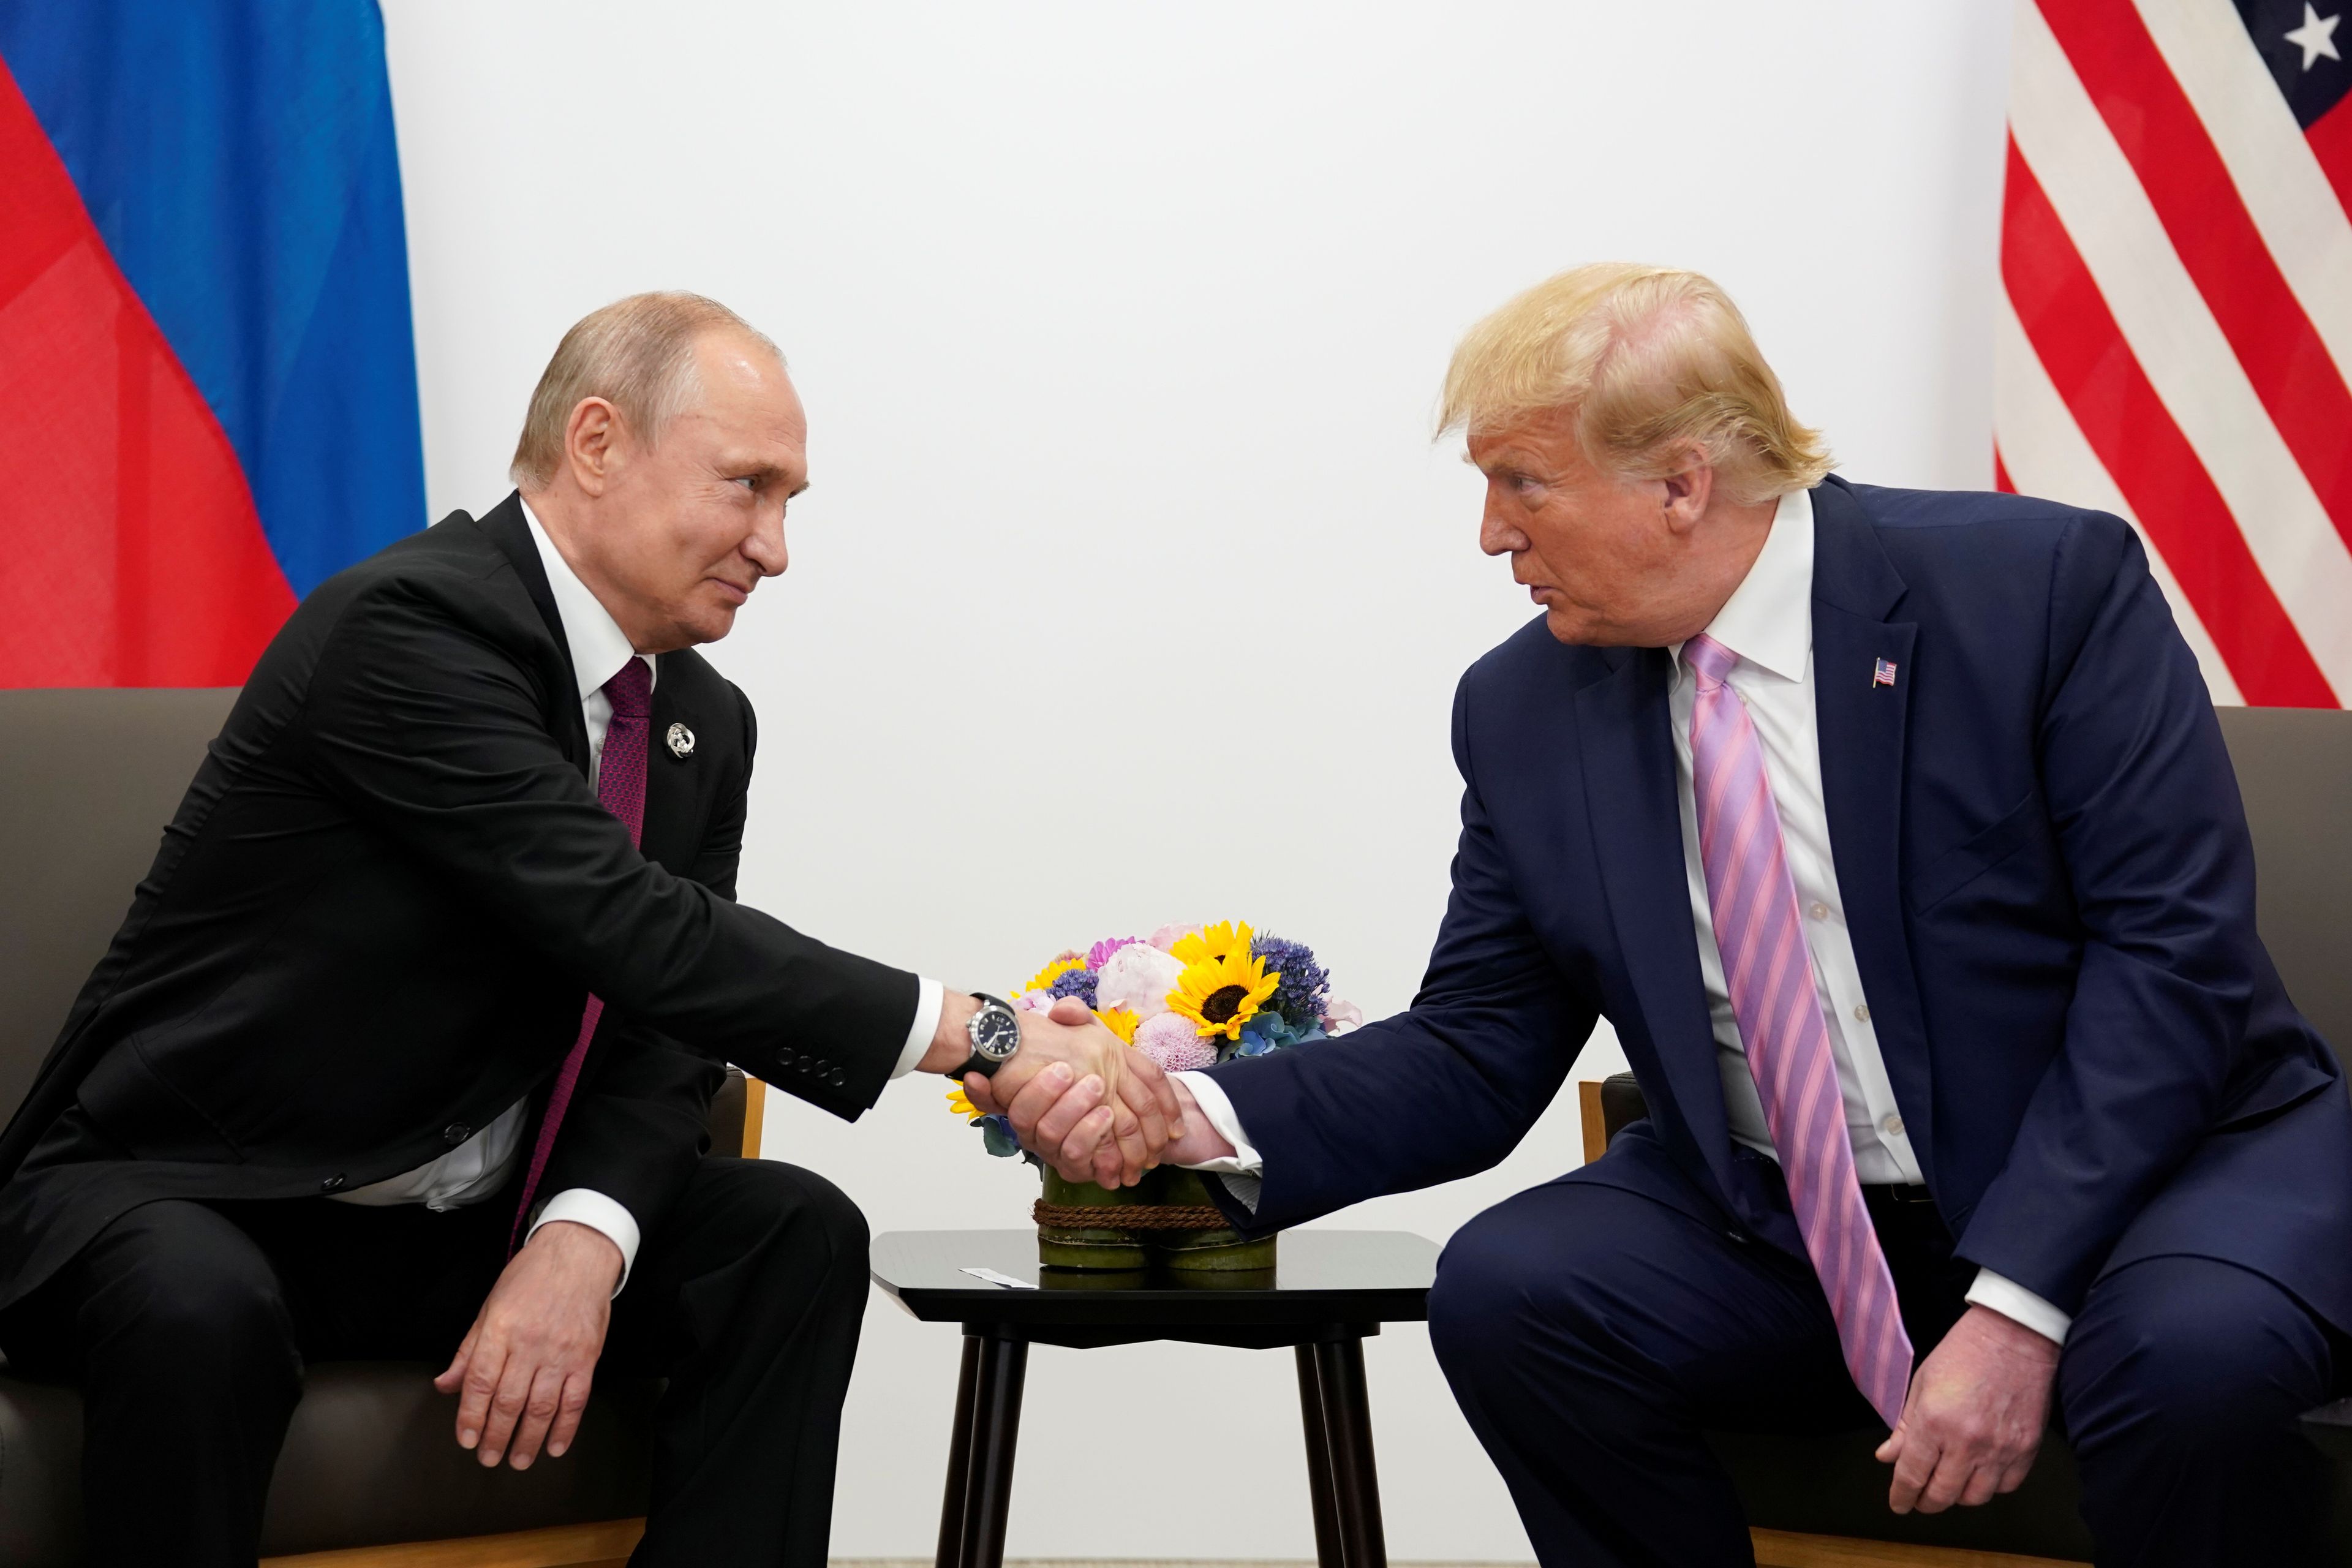 Vladimir Putin, presidente de Rusia, y Donald Trump, presidente de Estados Unidos, durante la reunión del G20 en Osaka (Japón).